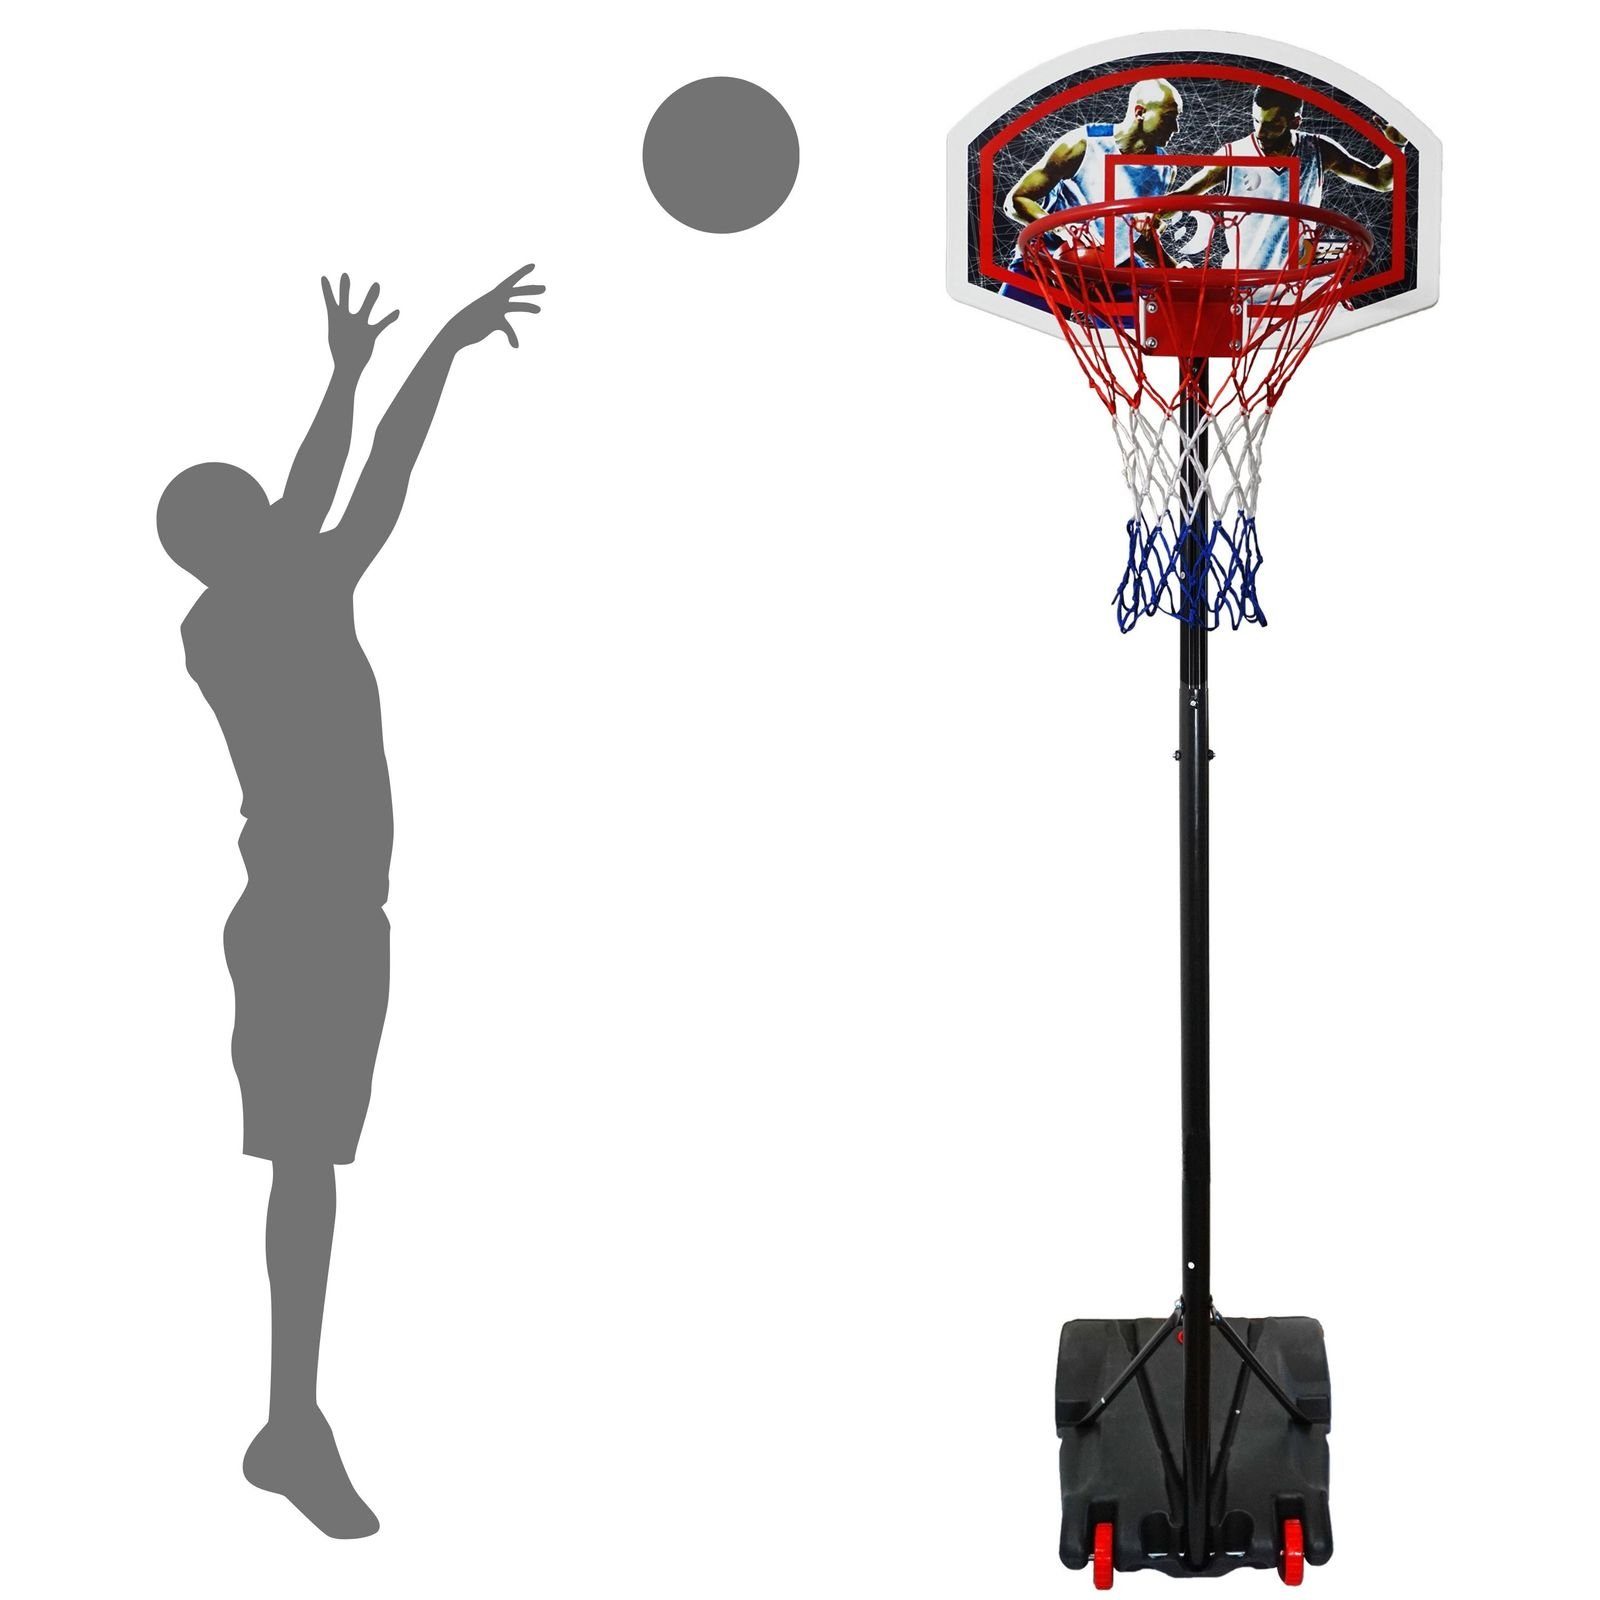 Best Sporting Basketballständer Basketballständer Basketballkorb Outdoor Set 165cm bis 205cm